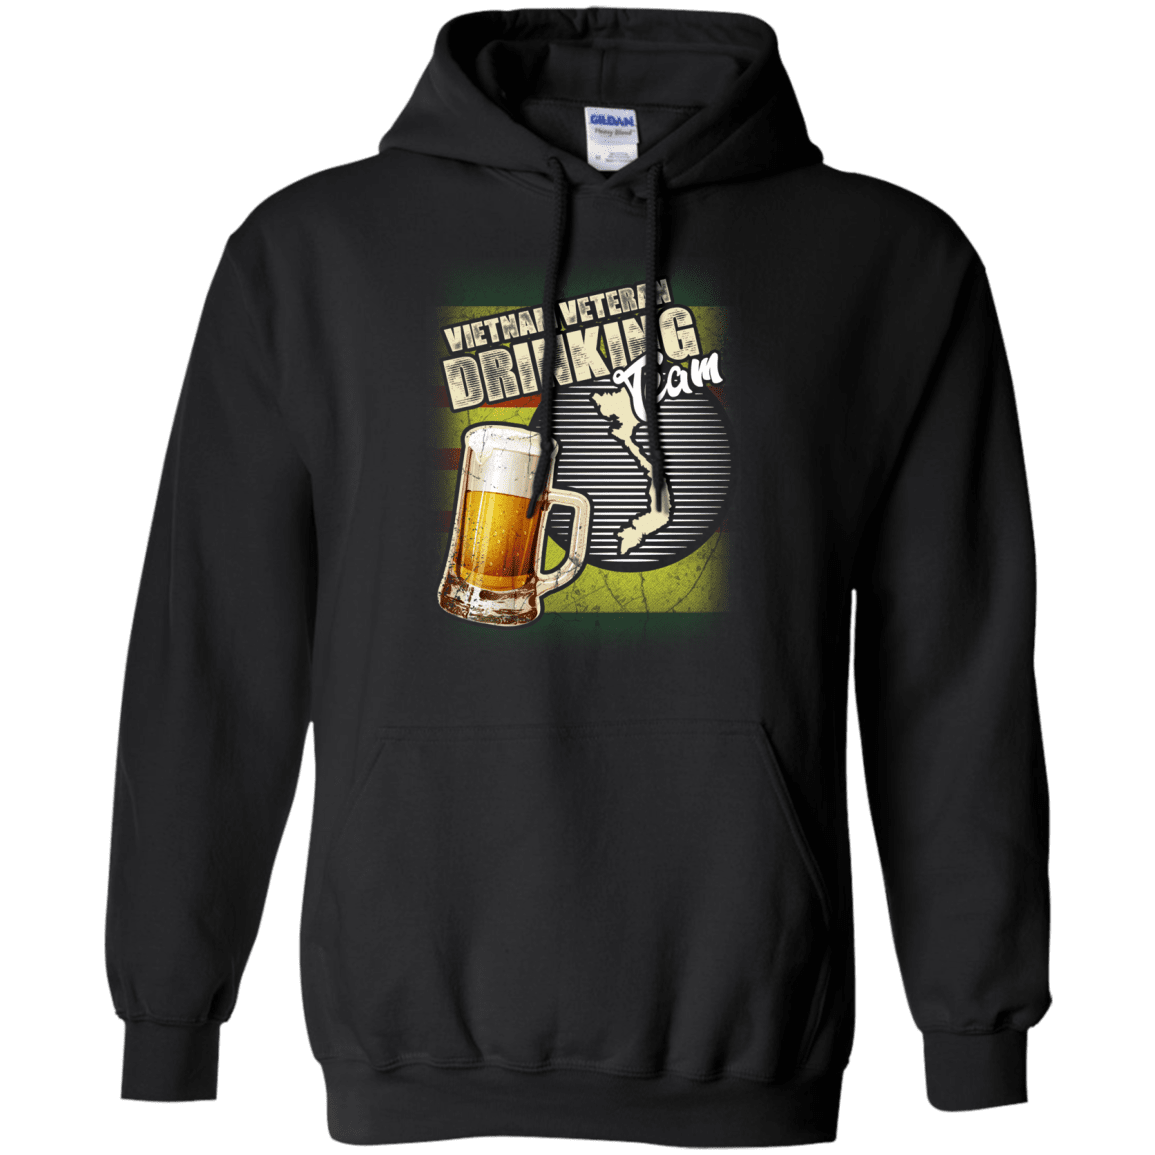 Military T-Shirt "Vietnam Veteran Drinking Beer Team" Front-TShirt-General-Veterans Nation